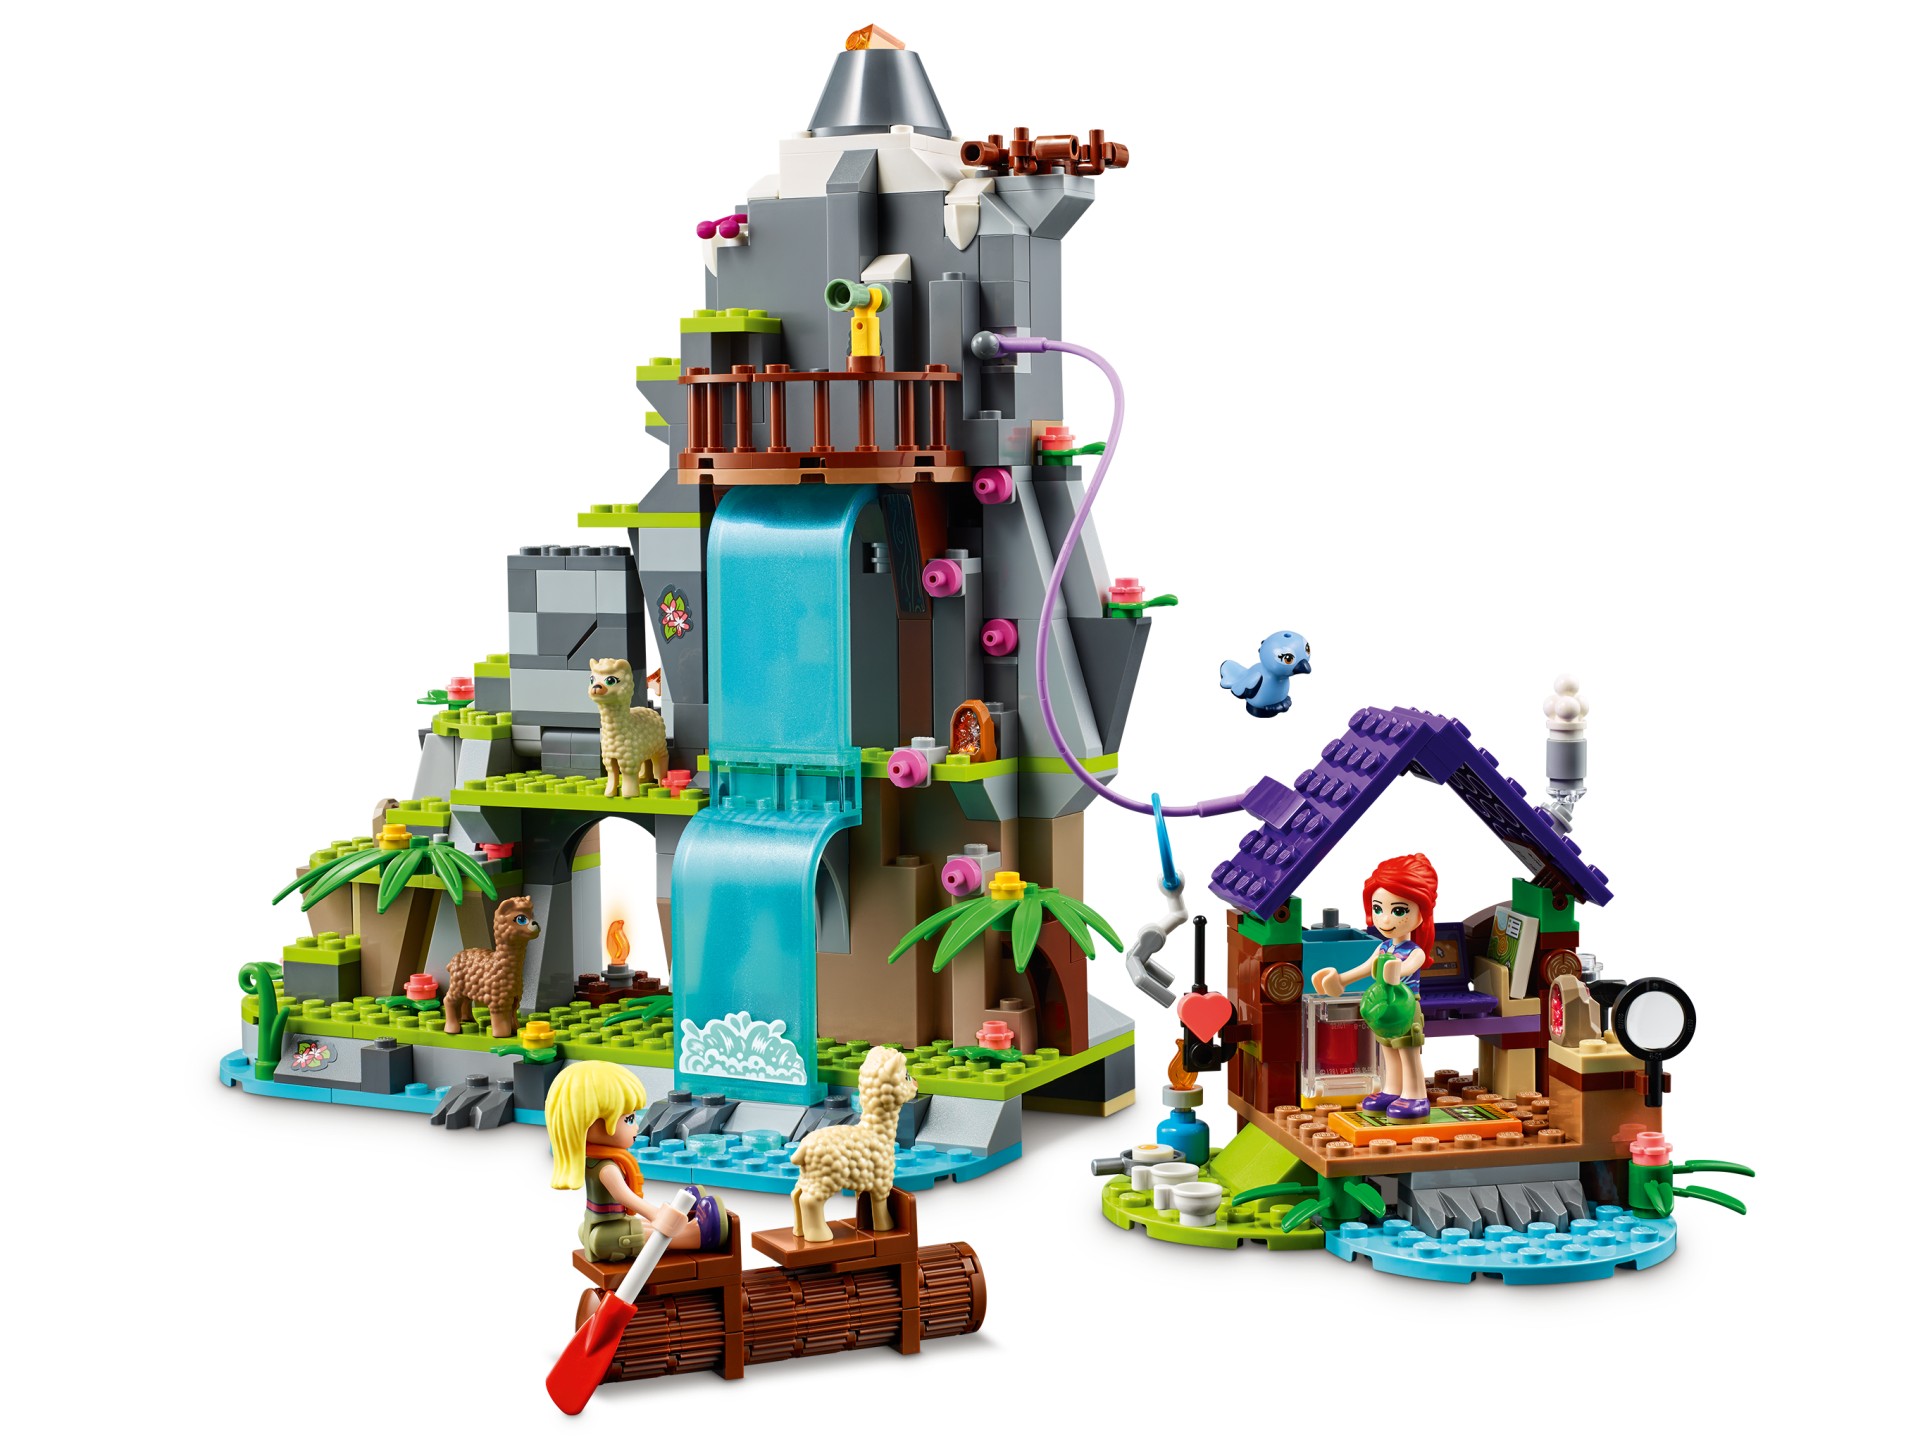 LEGO Friends Sommer 2020 Neuheiten ab 1. Juni 2020 verfügbar - Brickzeit